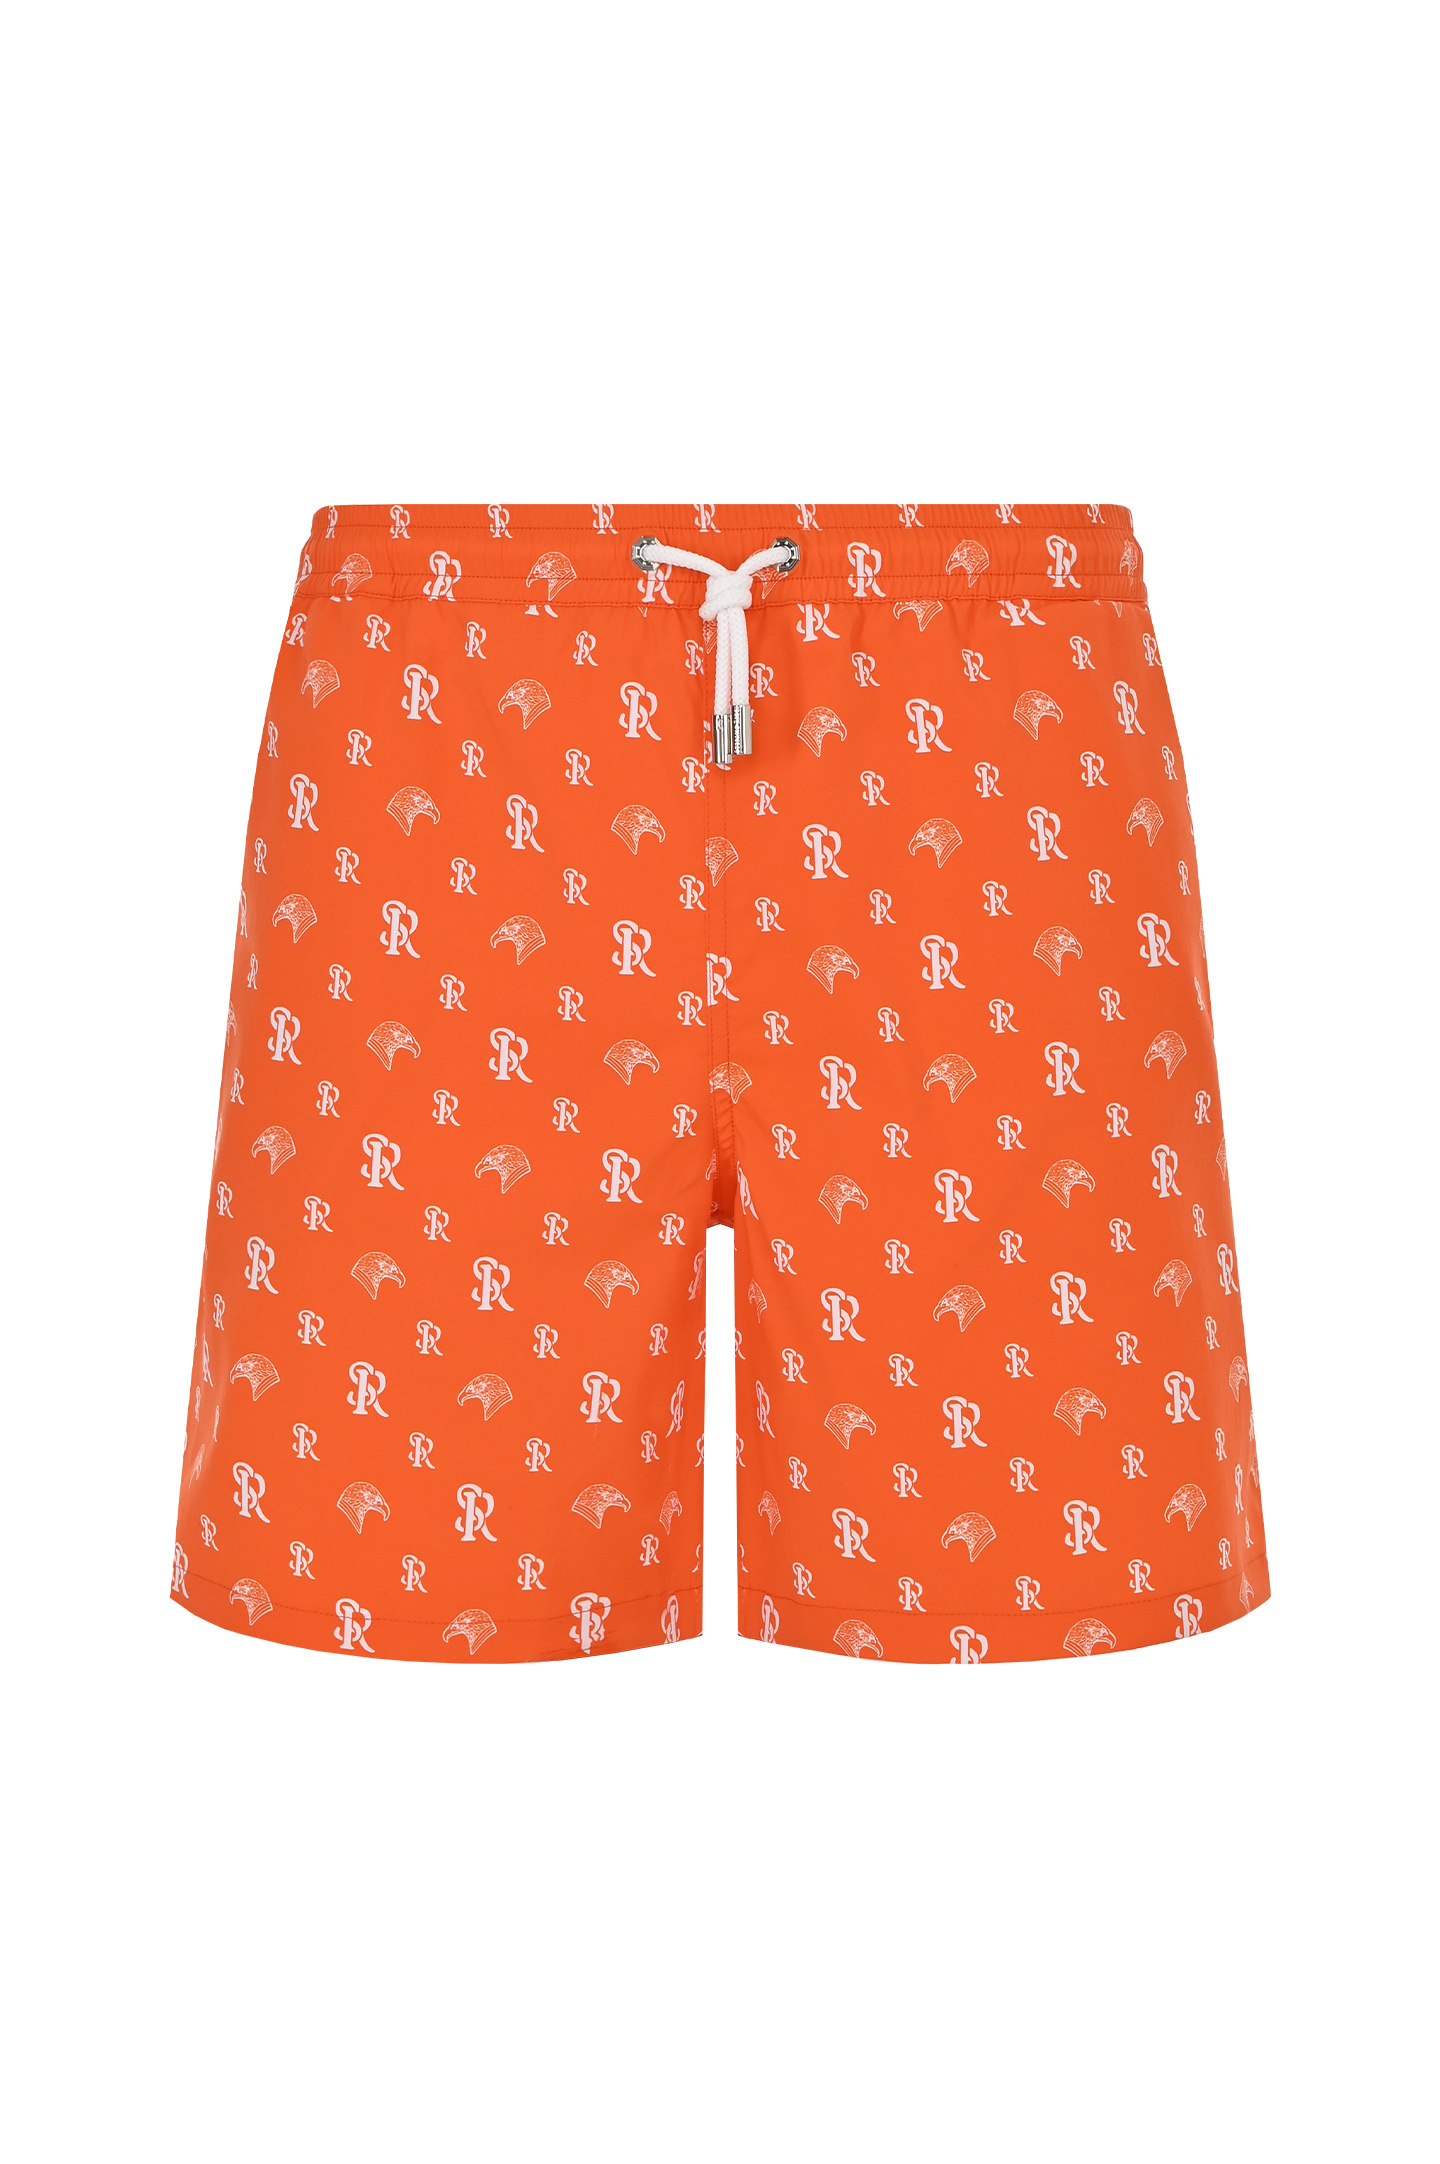 Плавки-шорты с принтом и логотипом STEFANO RICCI M6B4100050 B51401, цвет: Оранжевый, Мужской